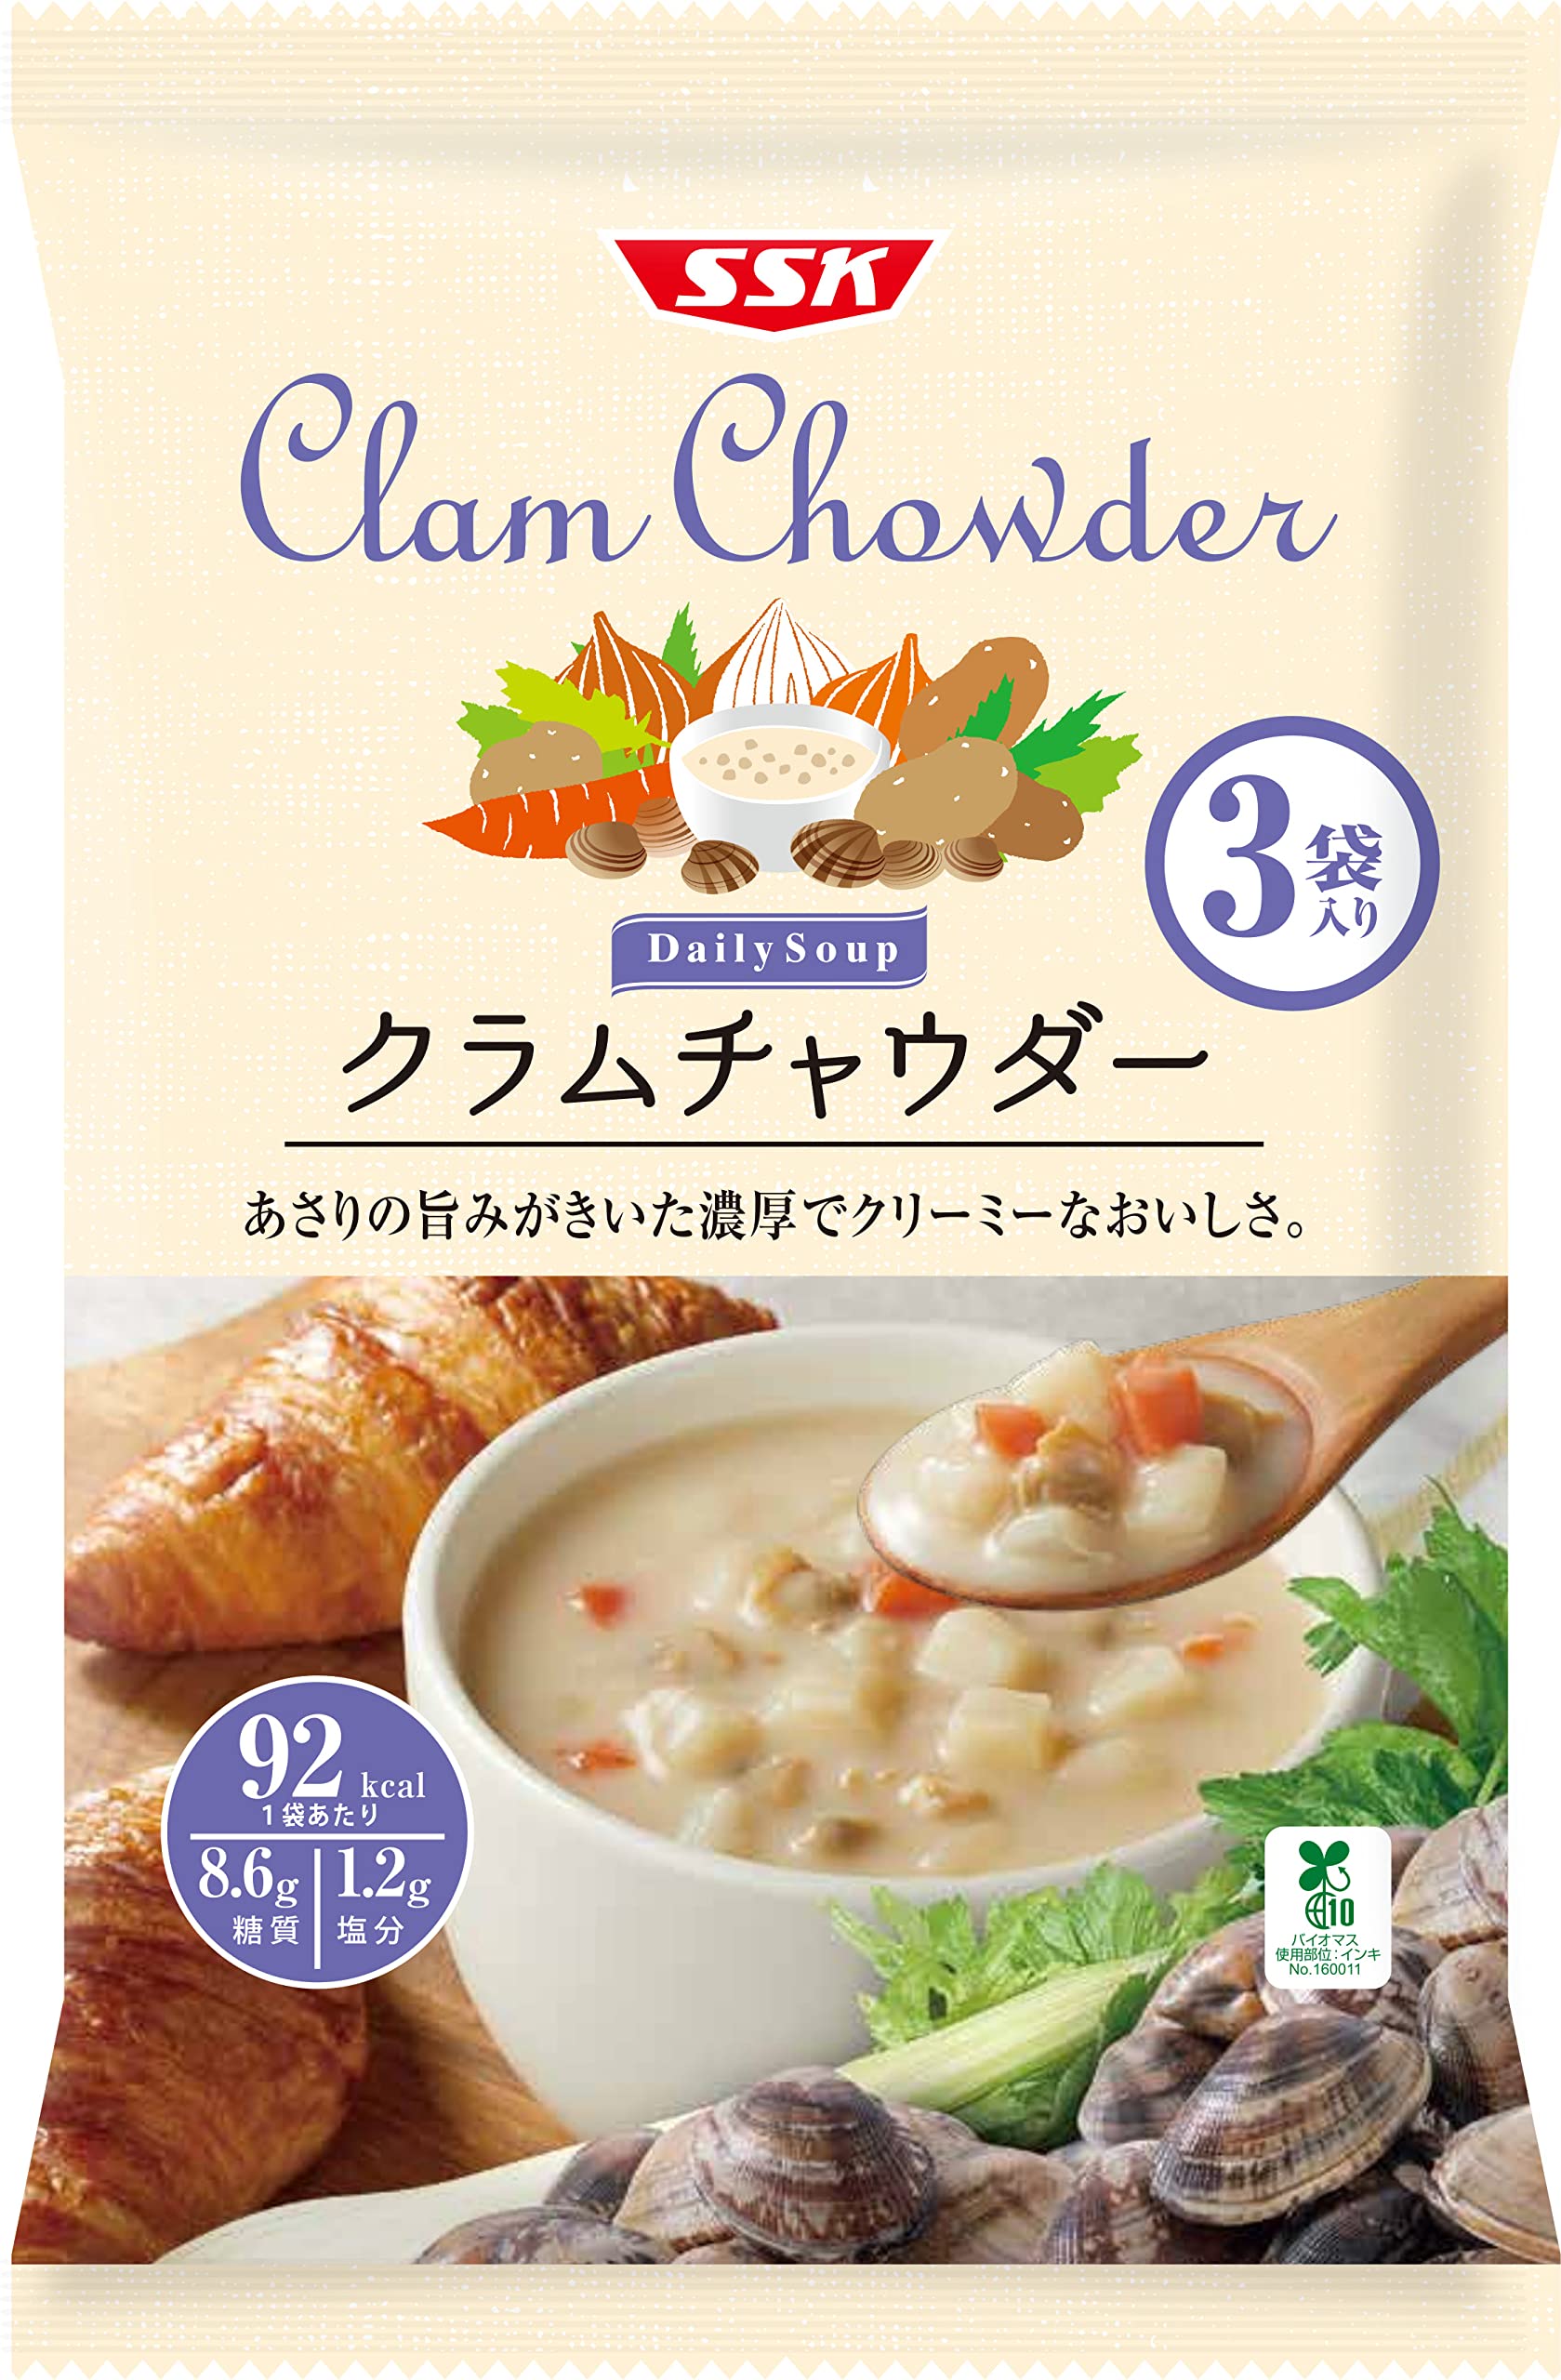 清水食品 SSK Daily Soup クラムチャウダー 480g（160g×3袋入り）×1セット スープの商品画像